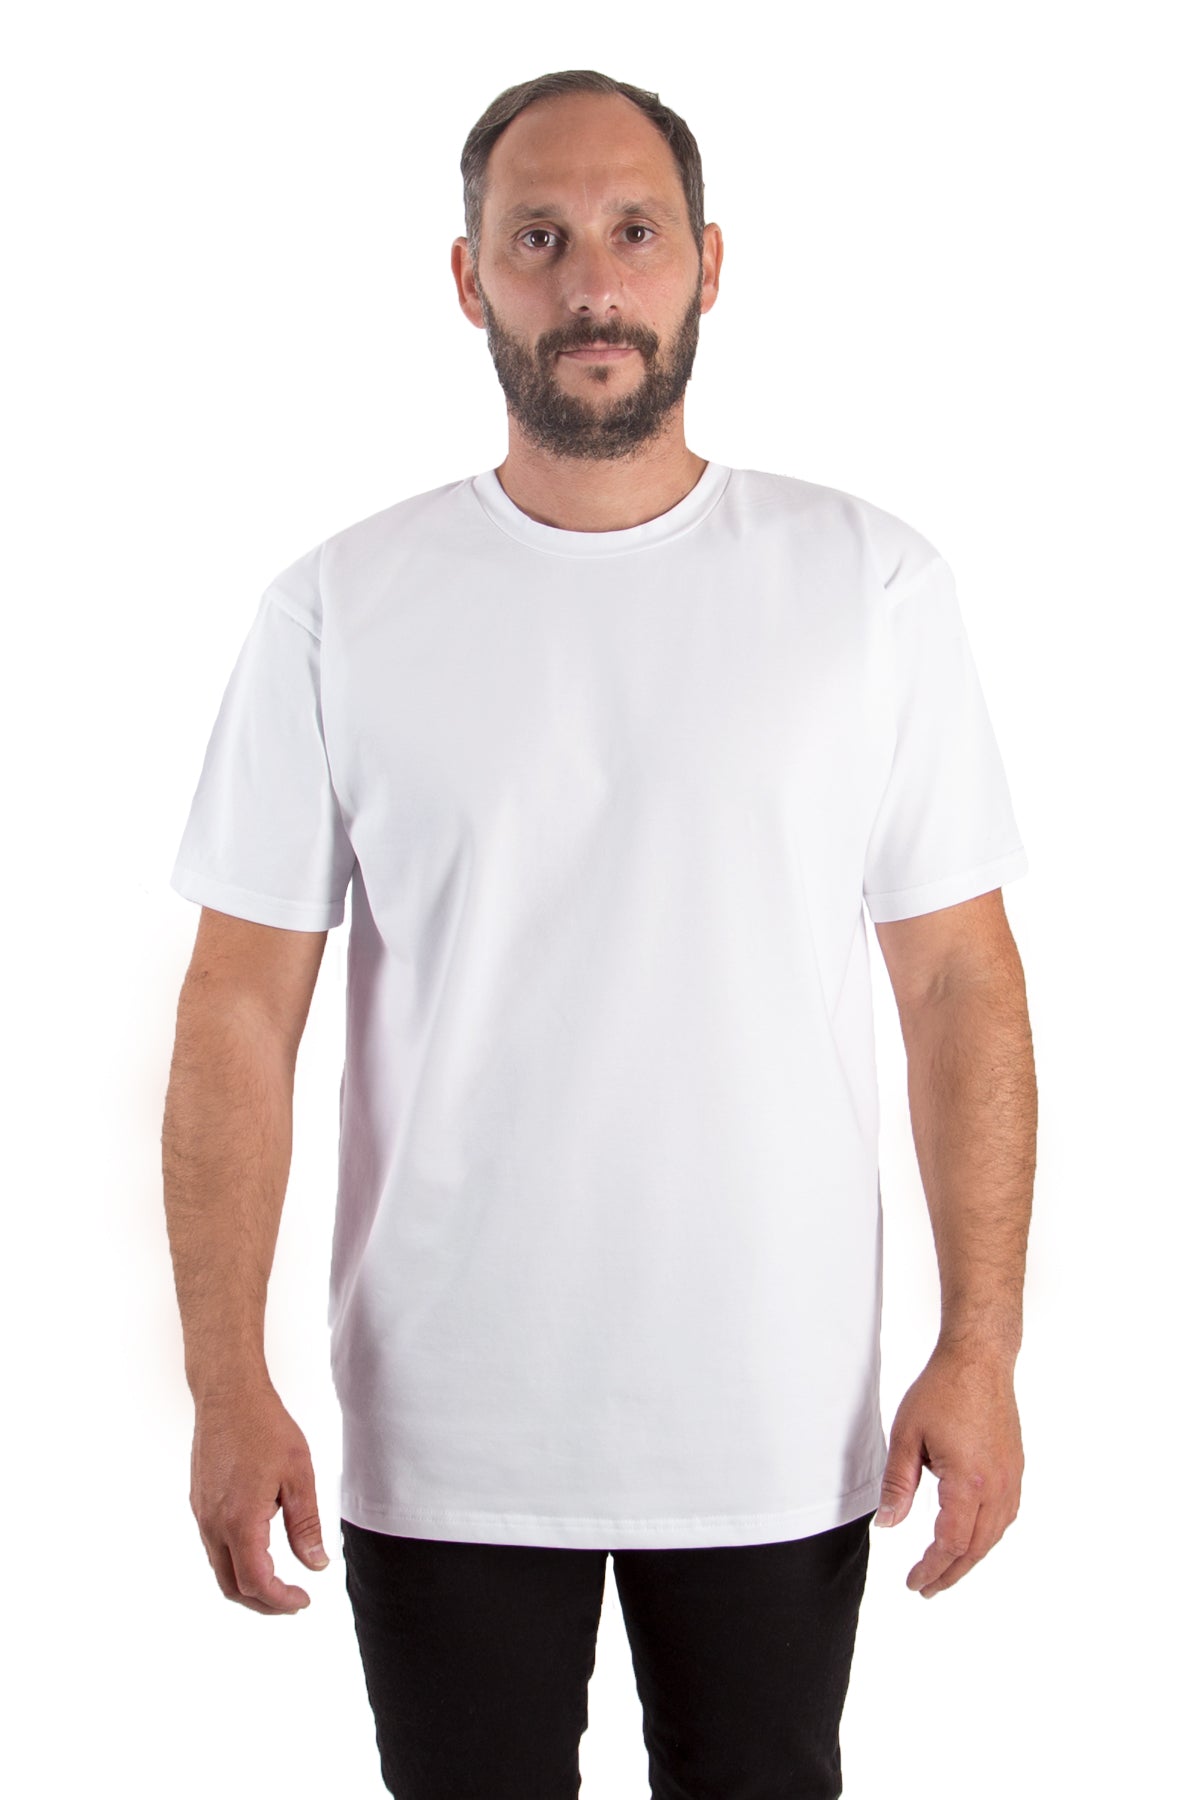 T-Shirt Rundhals (10er-Pack) - olive